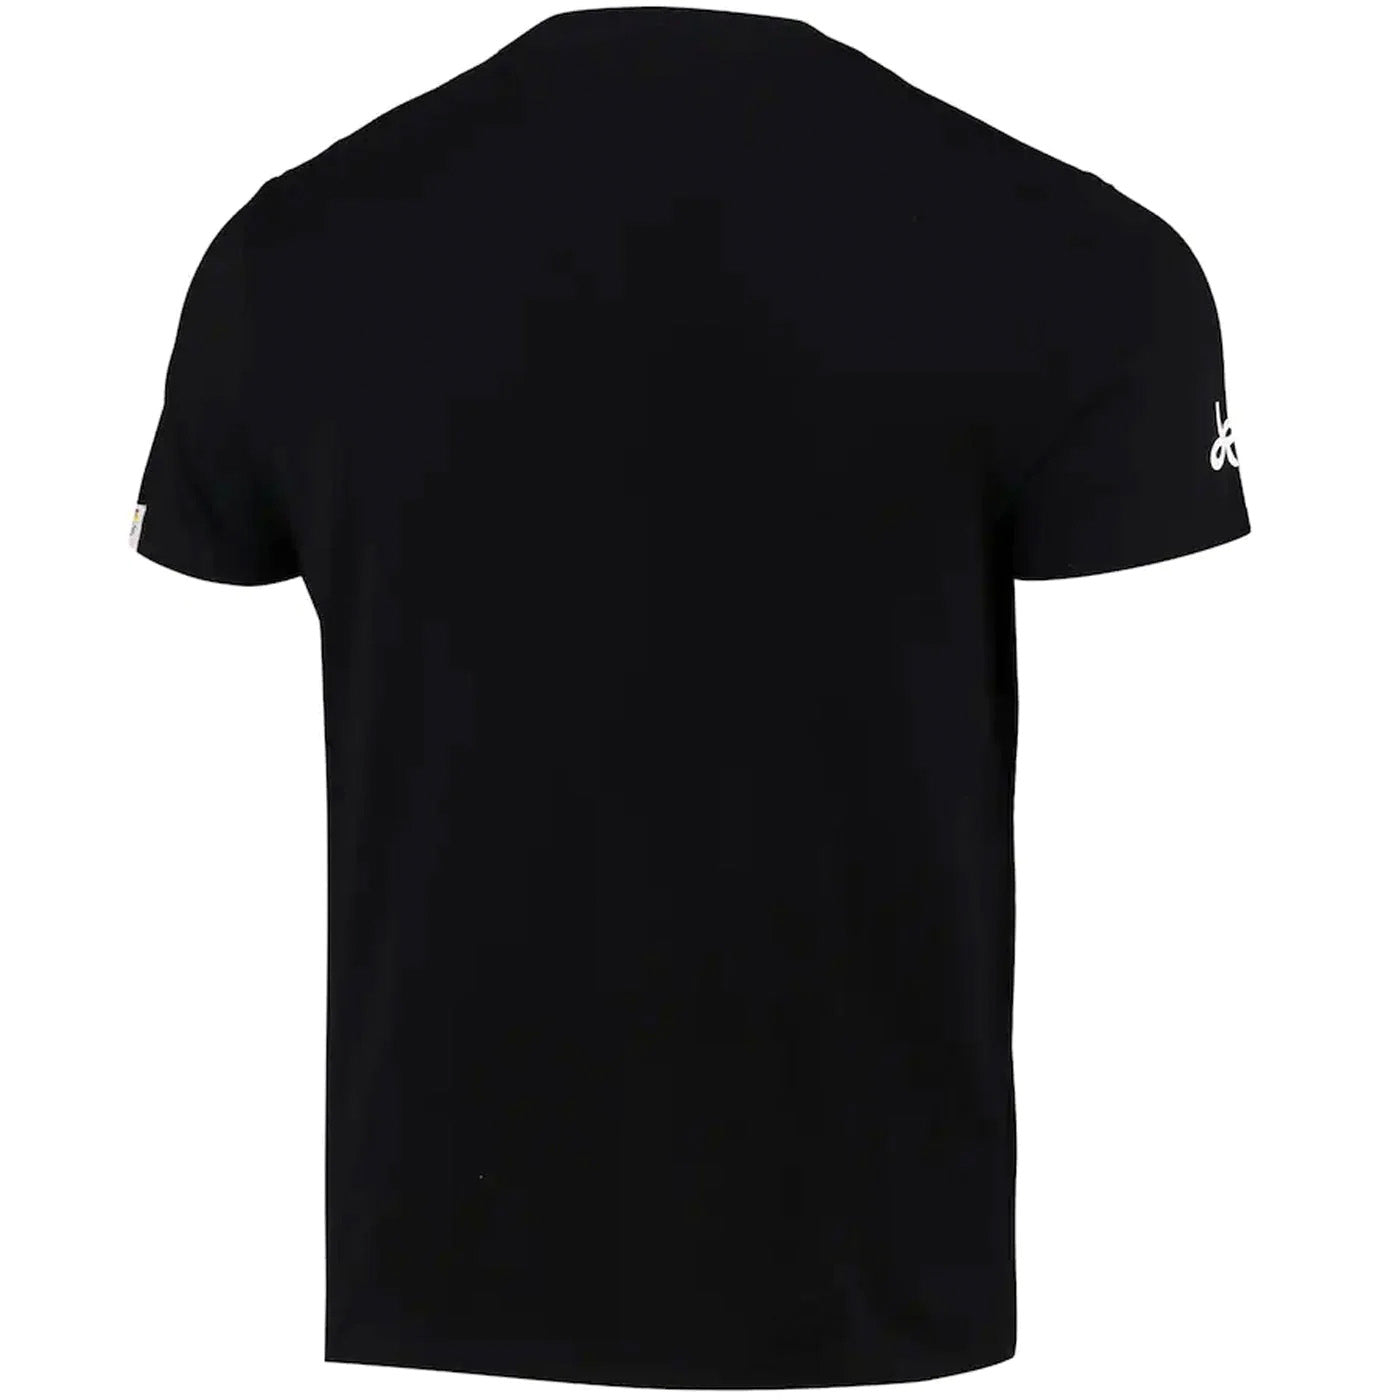 T-Shirt Tour de France Rayon - Noir